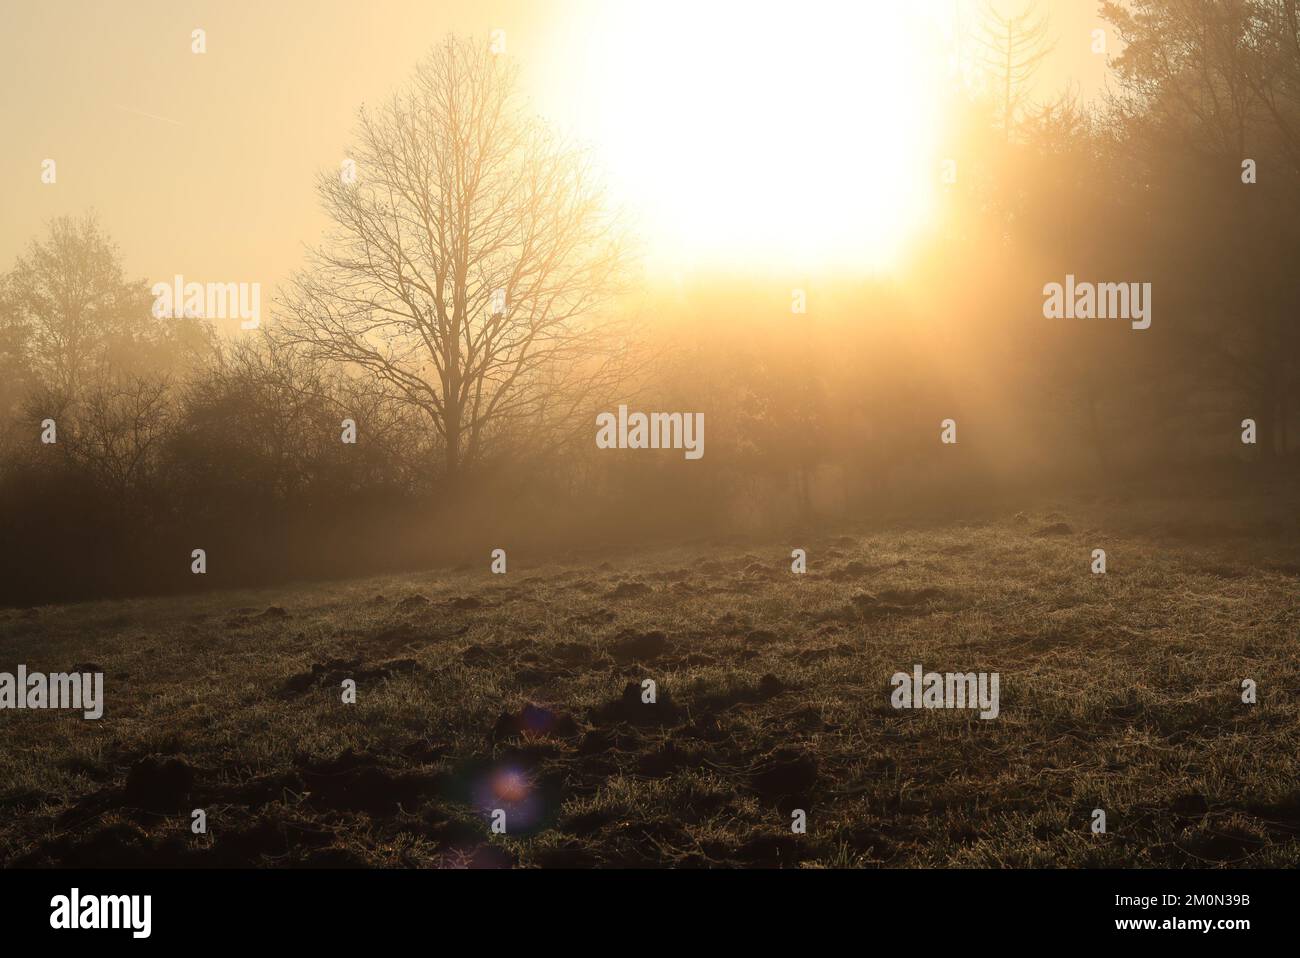 Lever du soleil dans un matin automne forêt photo arrière-plans Banque D'Images